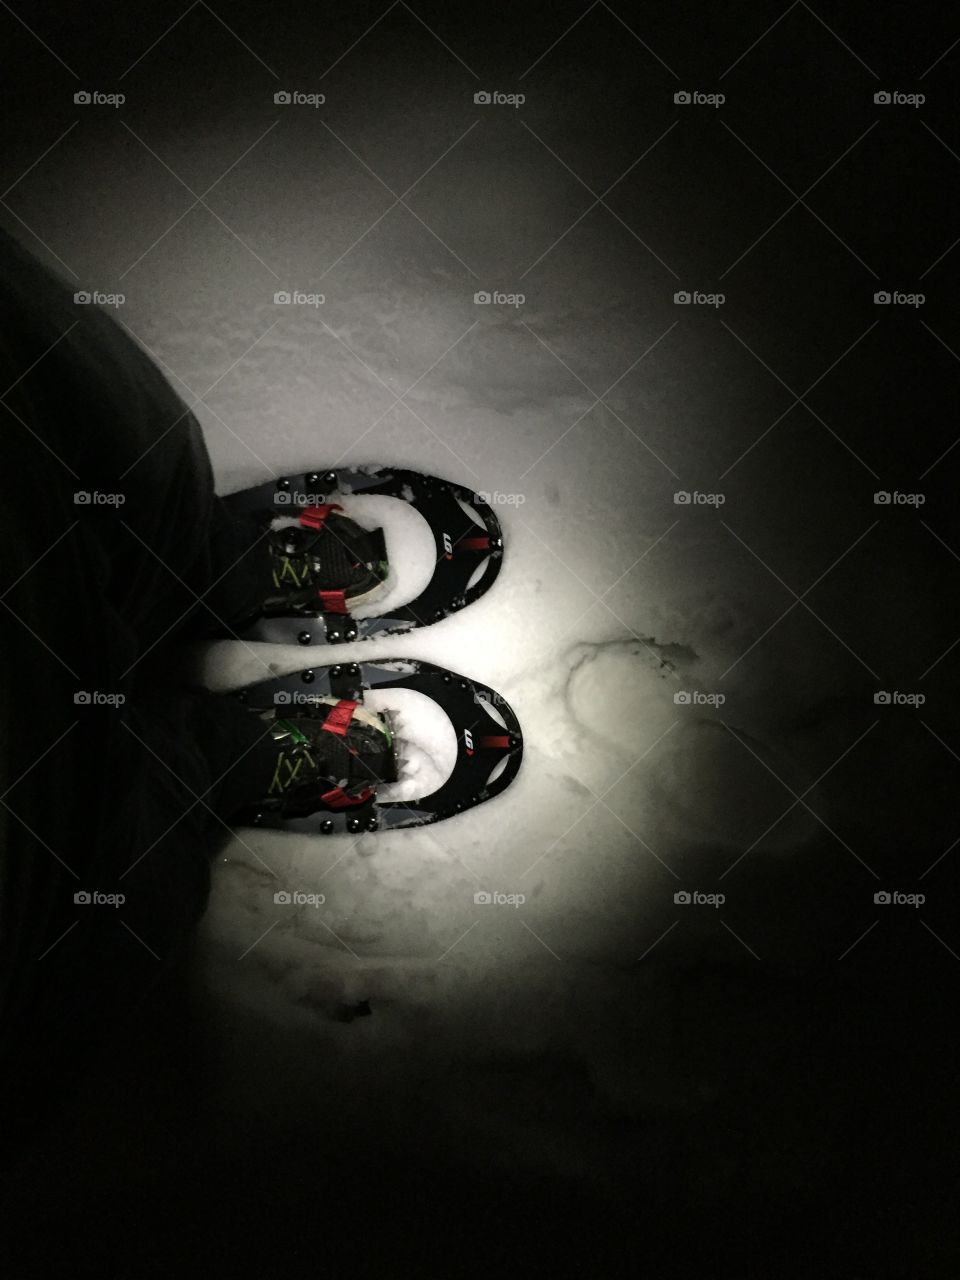 Snowshoeing in the dark